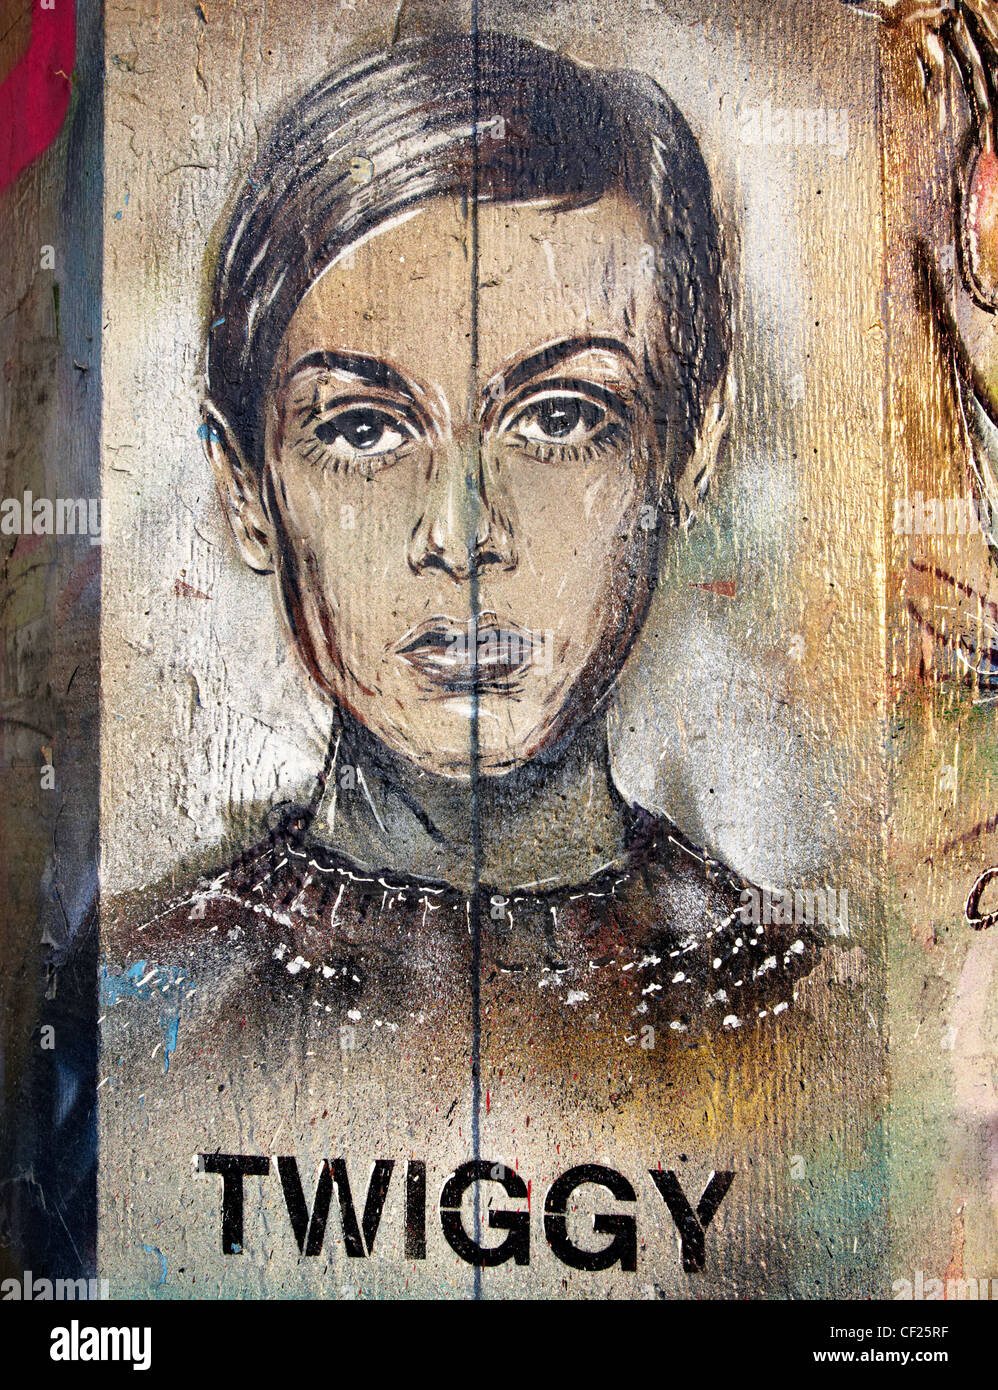 Twiggy Graffiti Southbank London UK Stock Photo